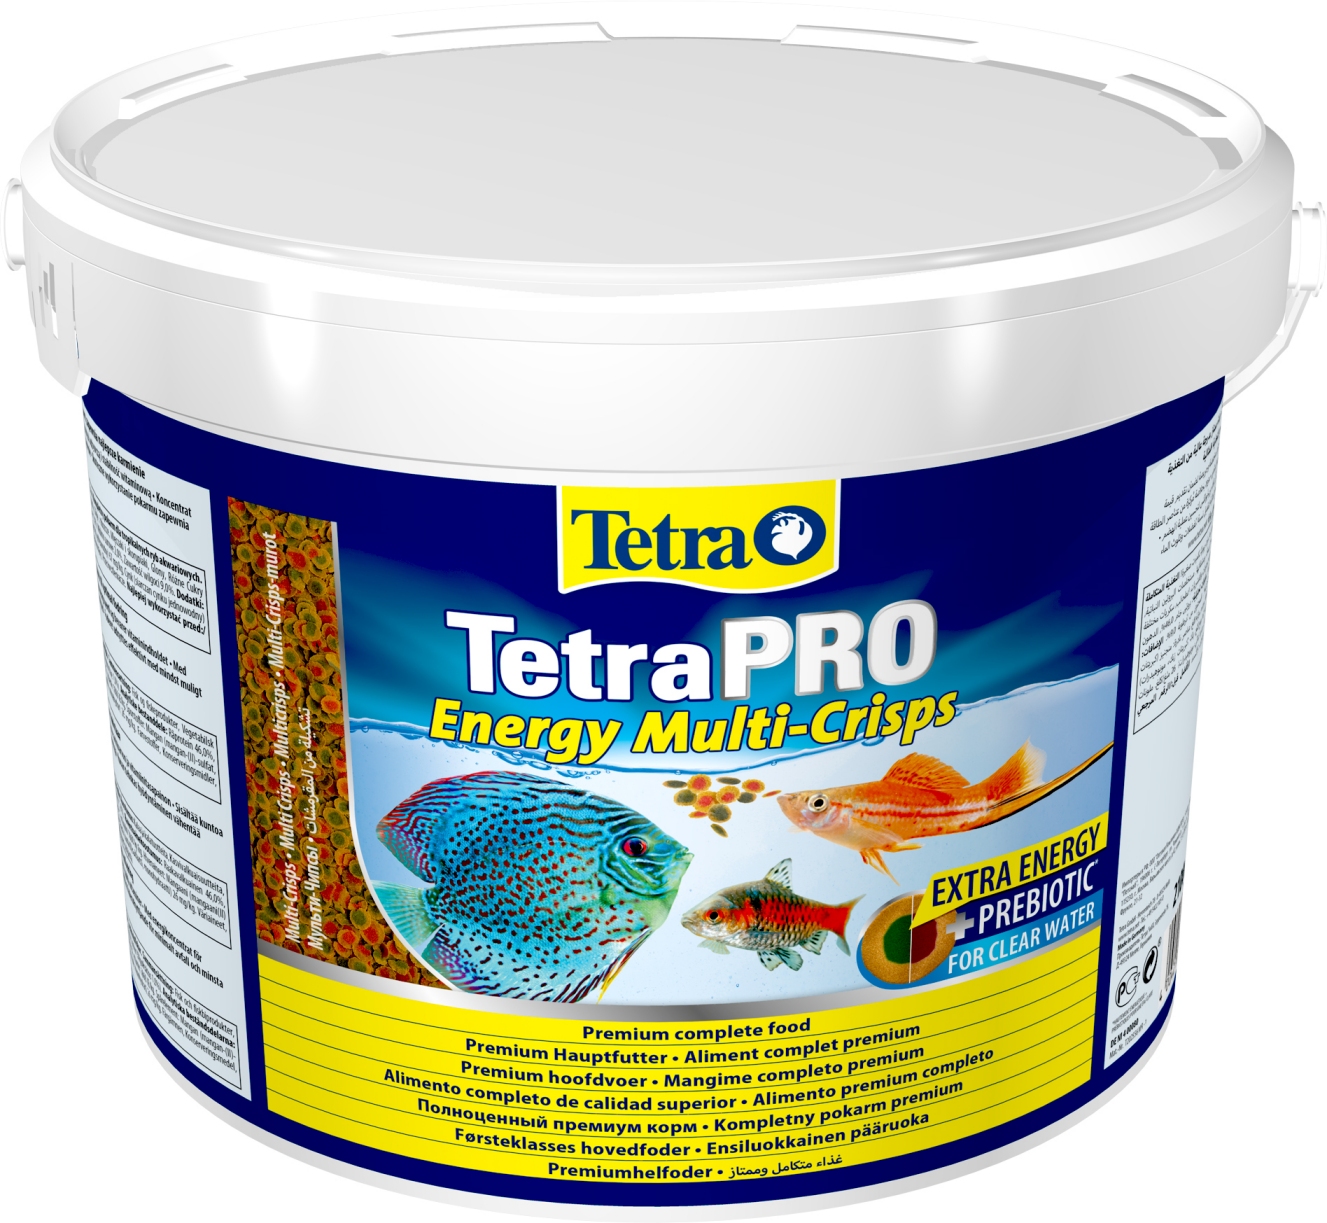 Tetra Pro Energy Multi-Crisps (UUDISTETTU!) - Fisut@r